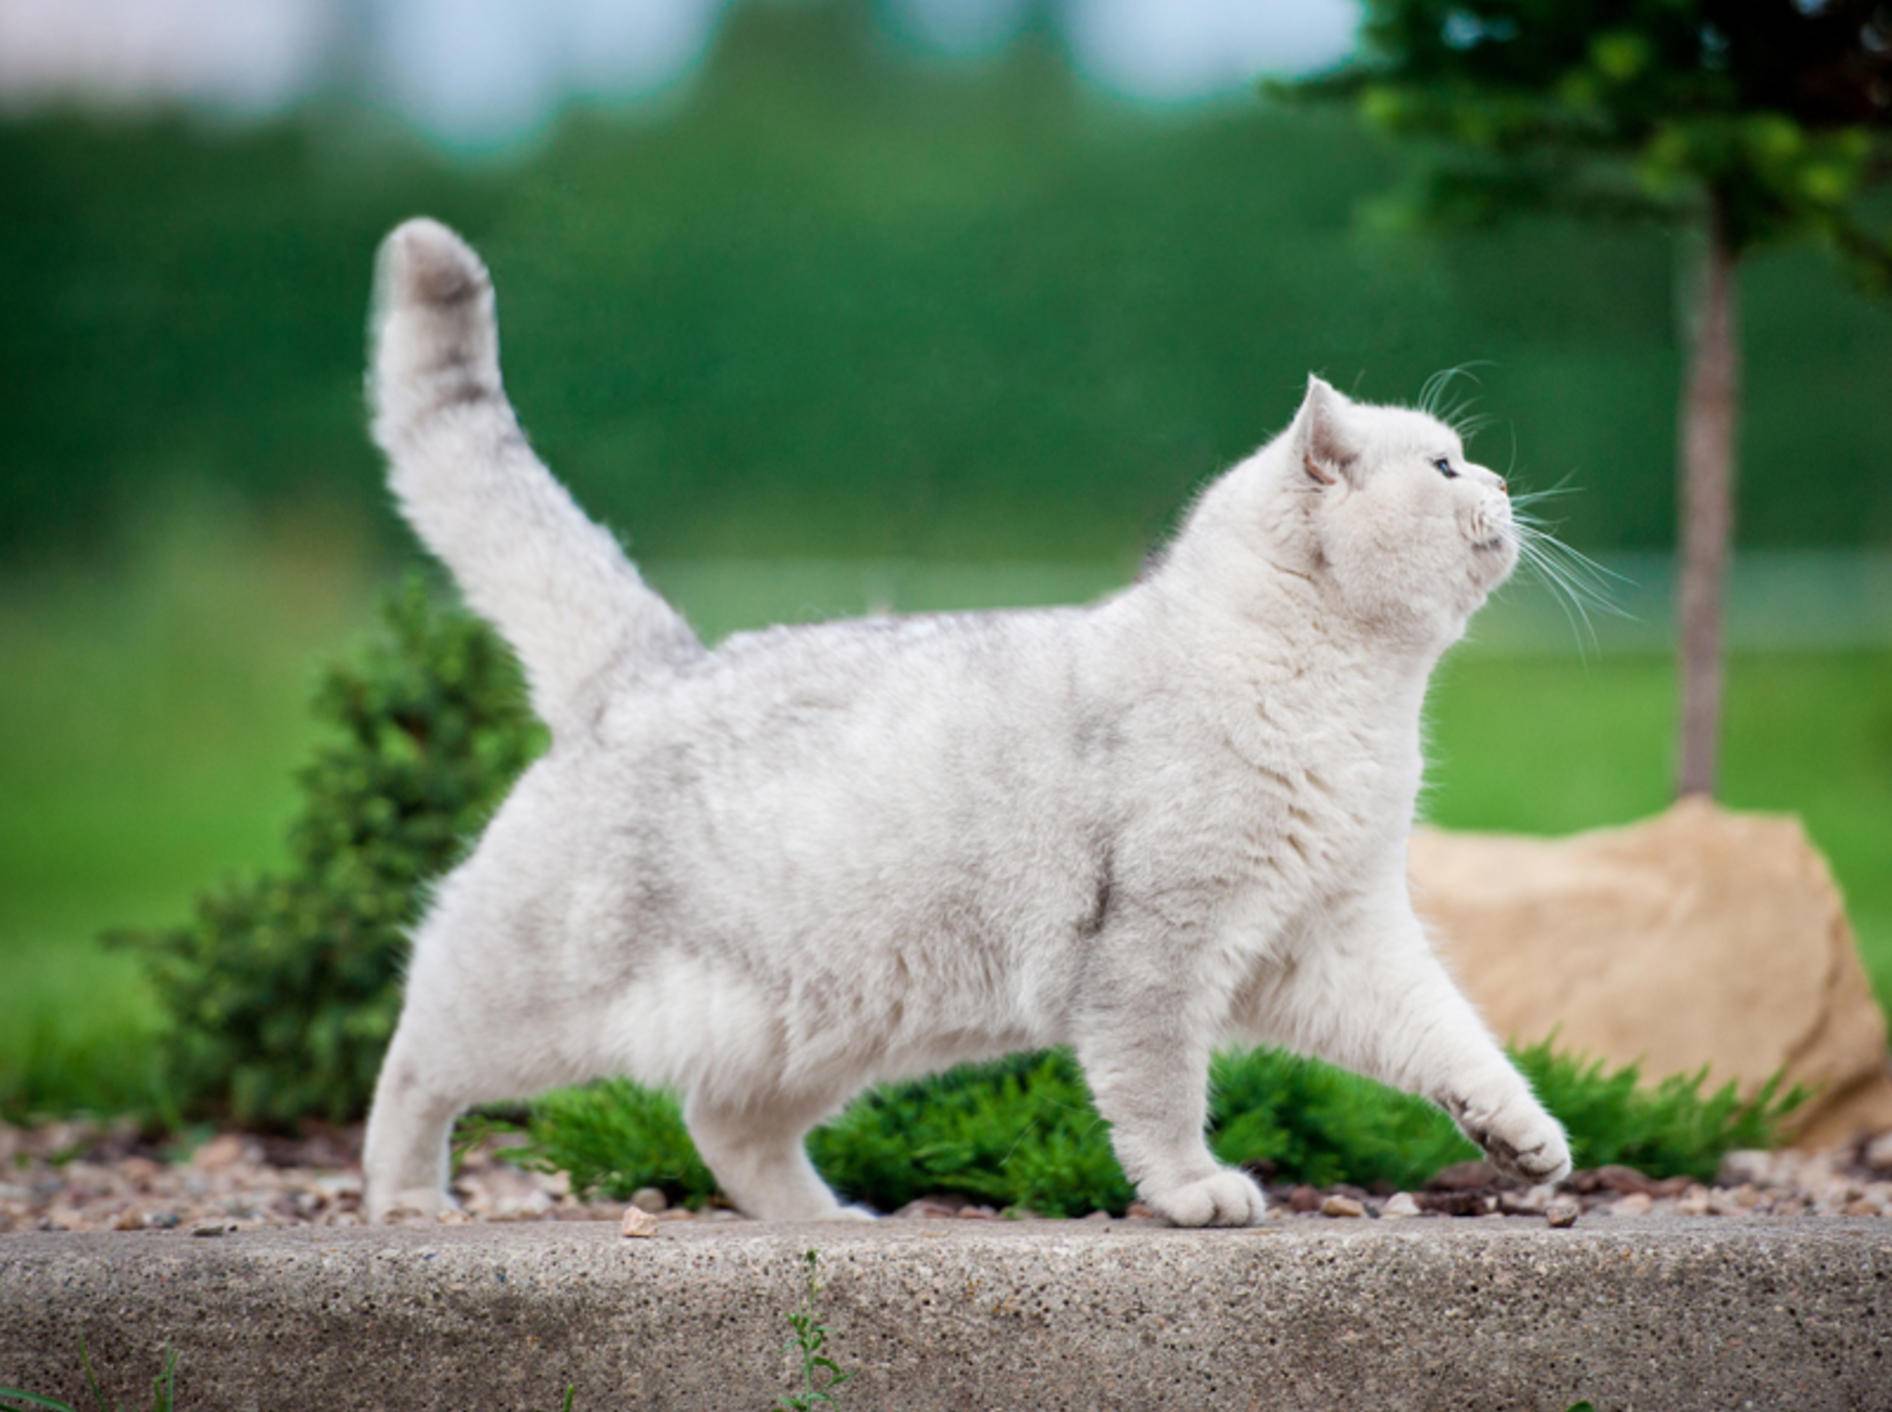 Ist diese Britisch-Kurzhaar-Katze zu dick? Oder ist ihr Hängebauch normal? – Shutterstock / Rita Kochmarjova